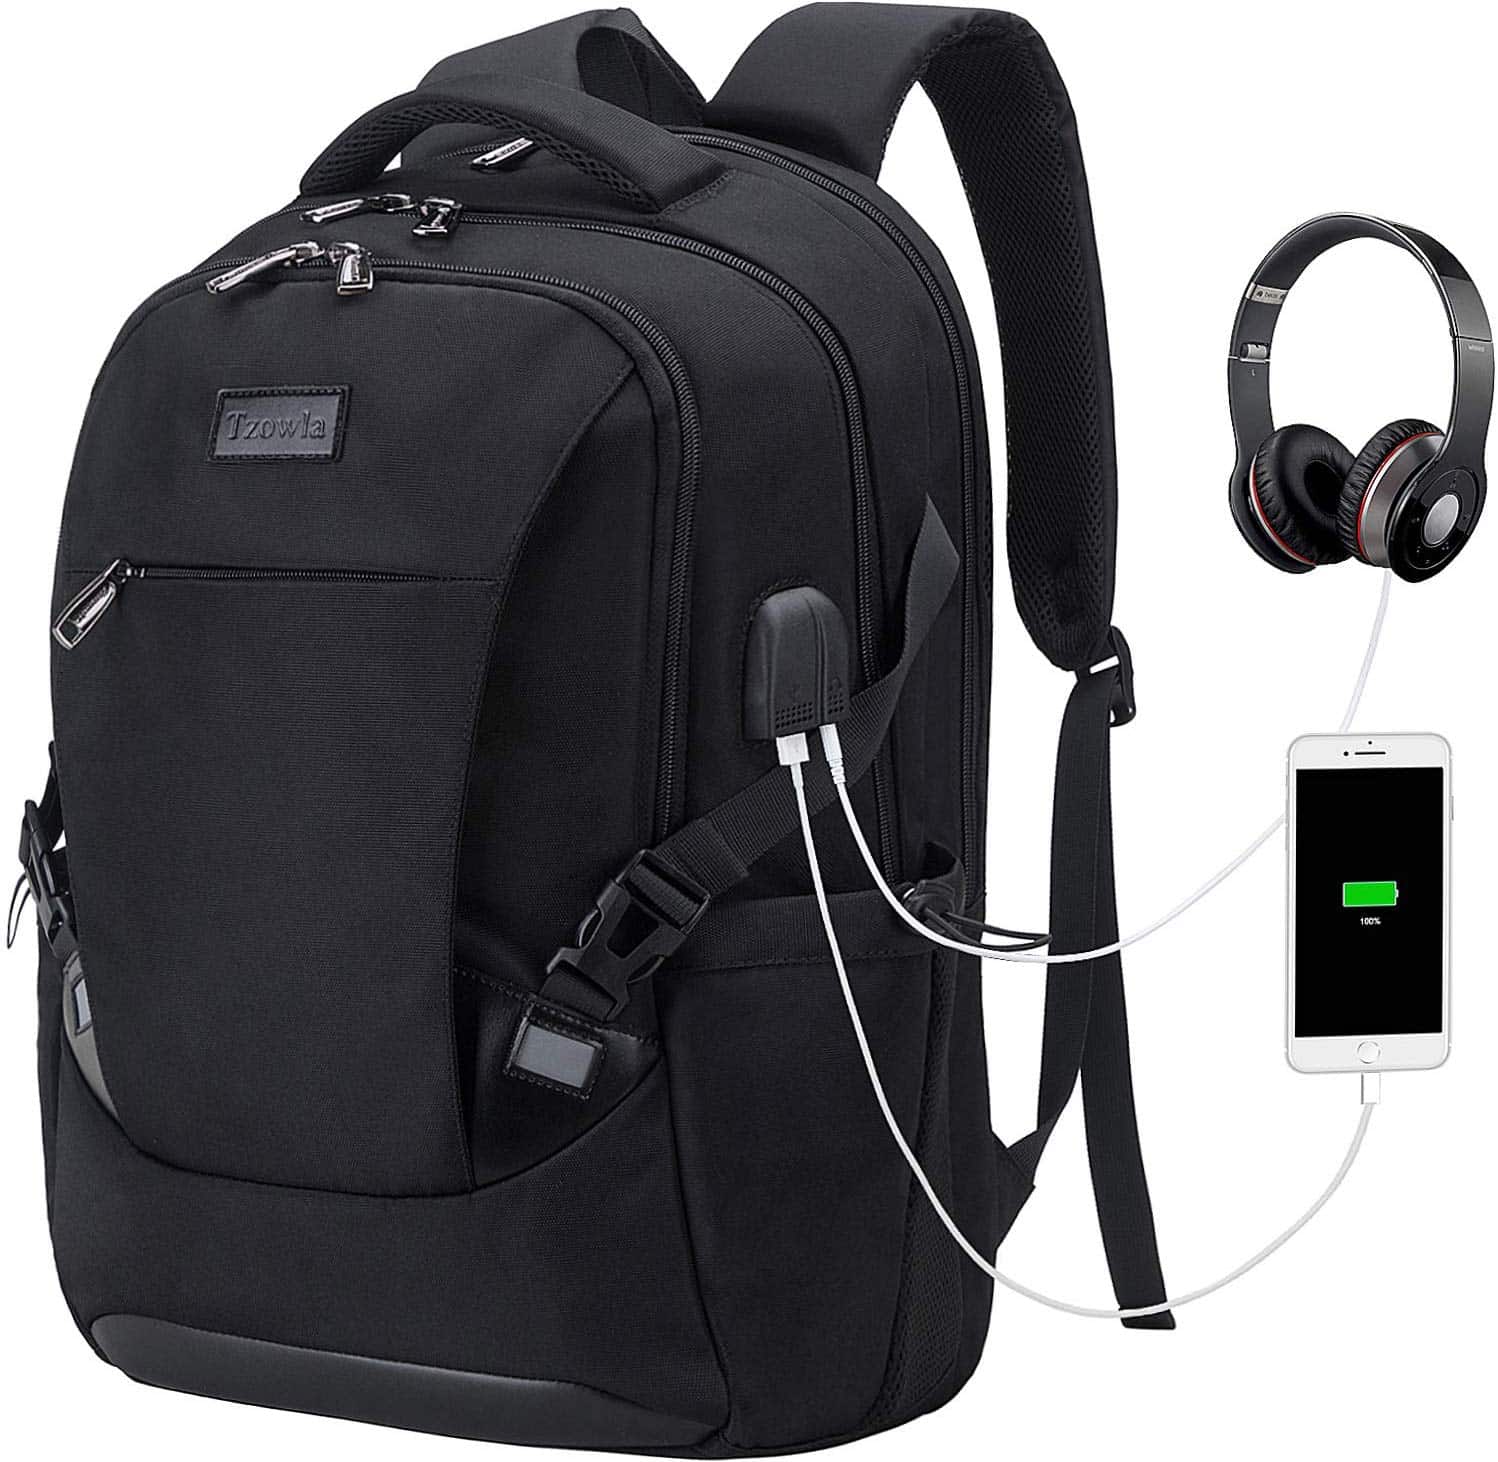 Tzowla Travel Laptop Backpack Waterproof Business Work School College Bag $29.99 (REG $76.99)